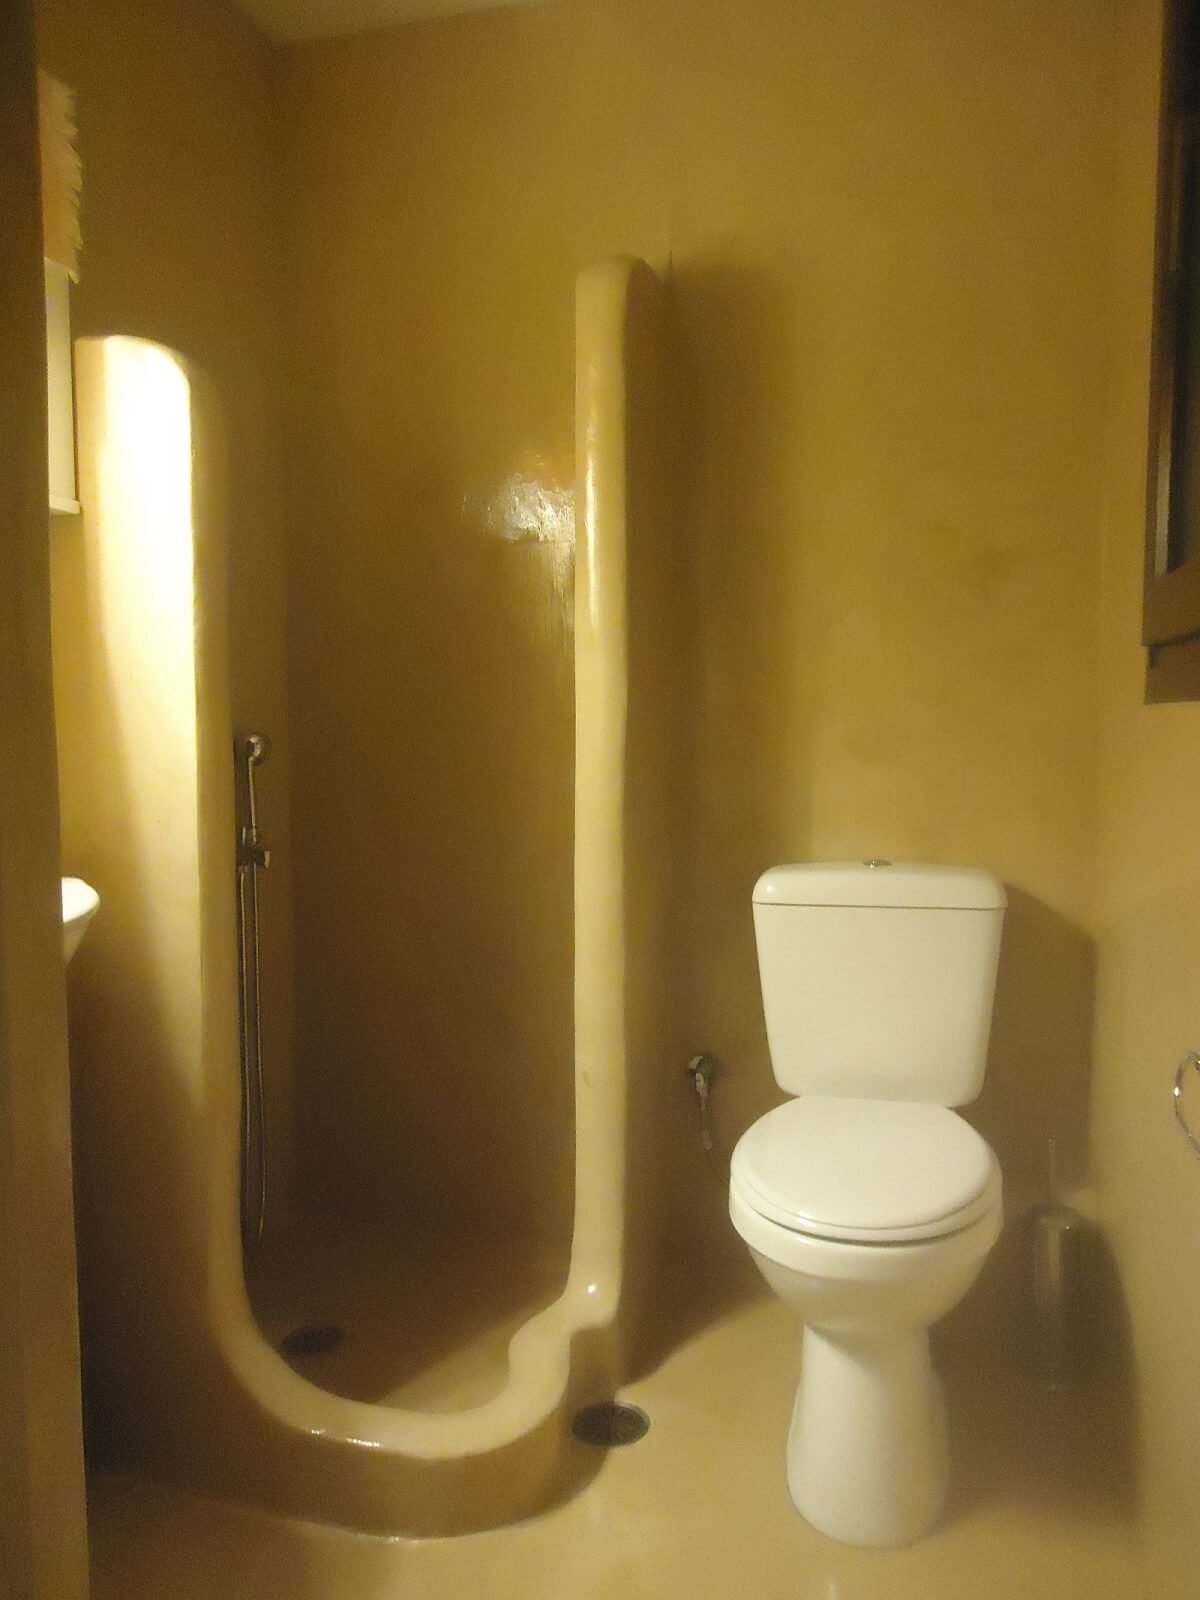 Πατητή τσιμεντοκονία σε μπάνιο και χτιστή ντουζιέρα